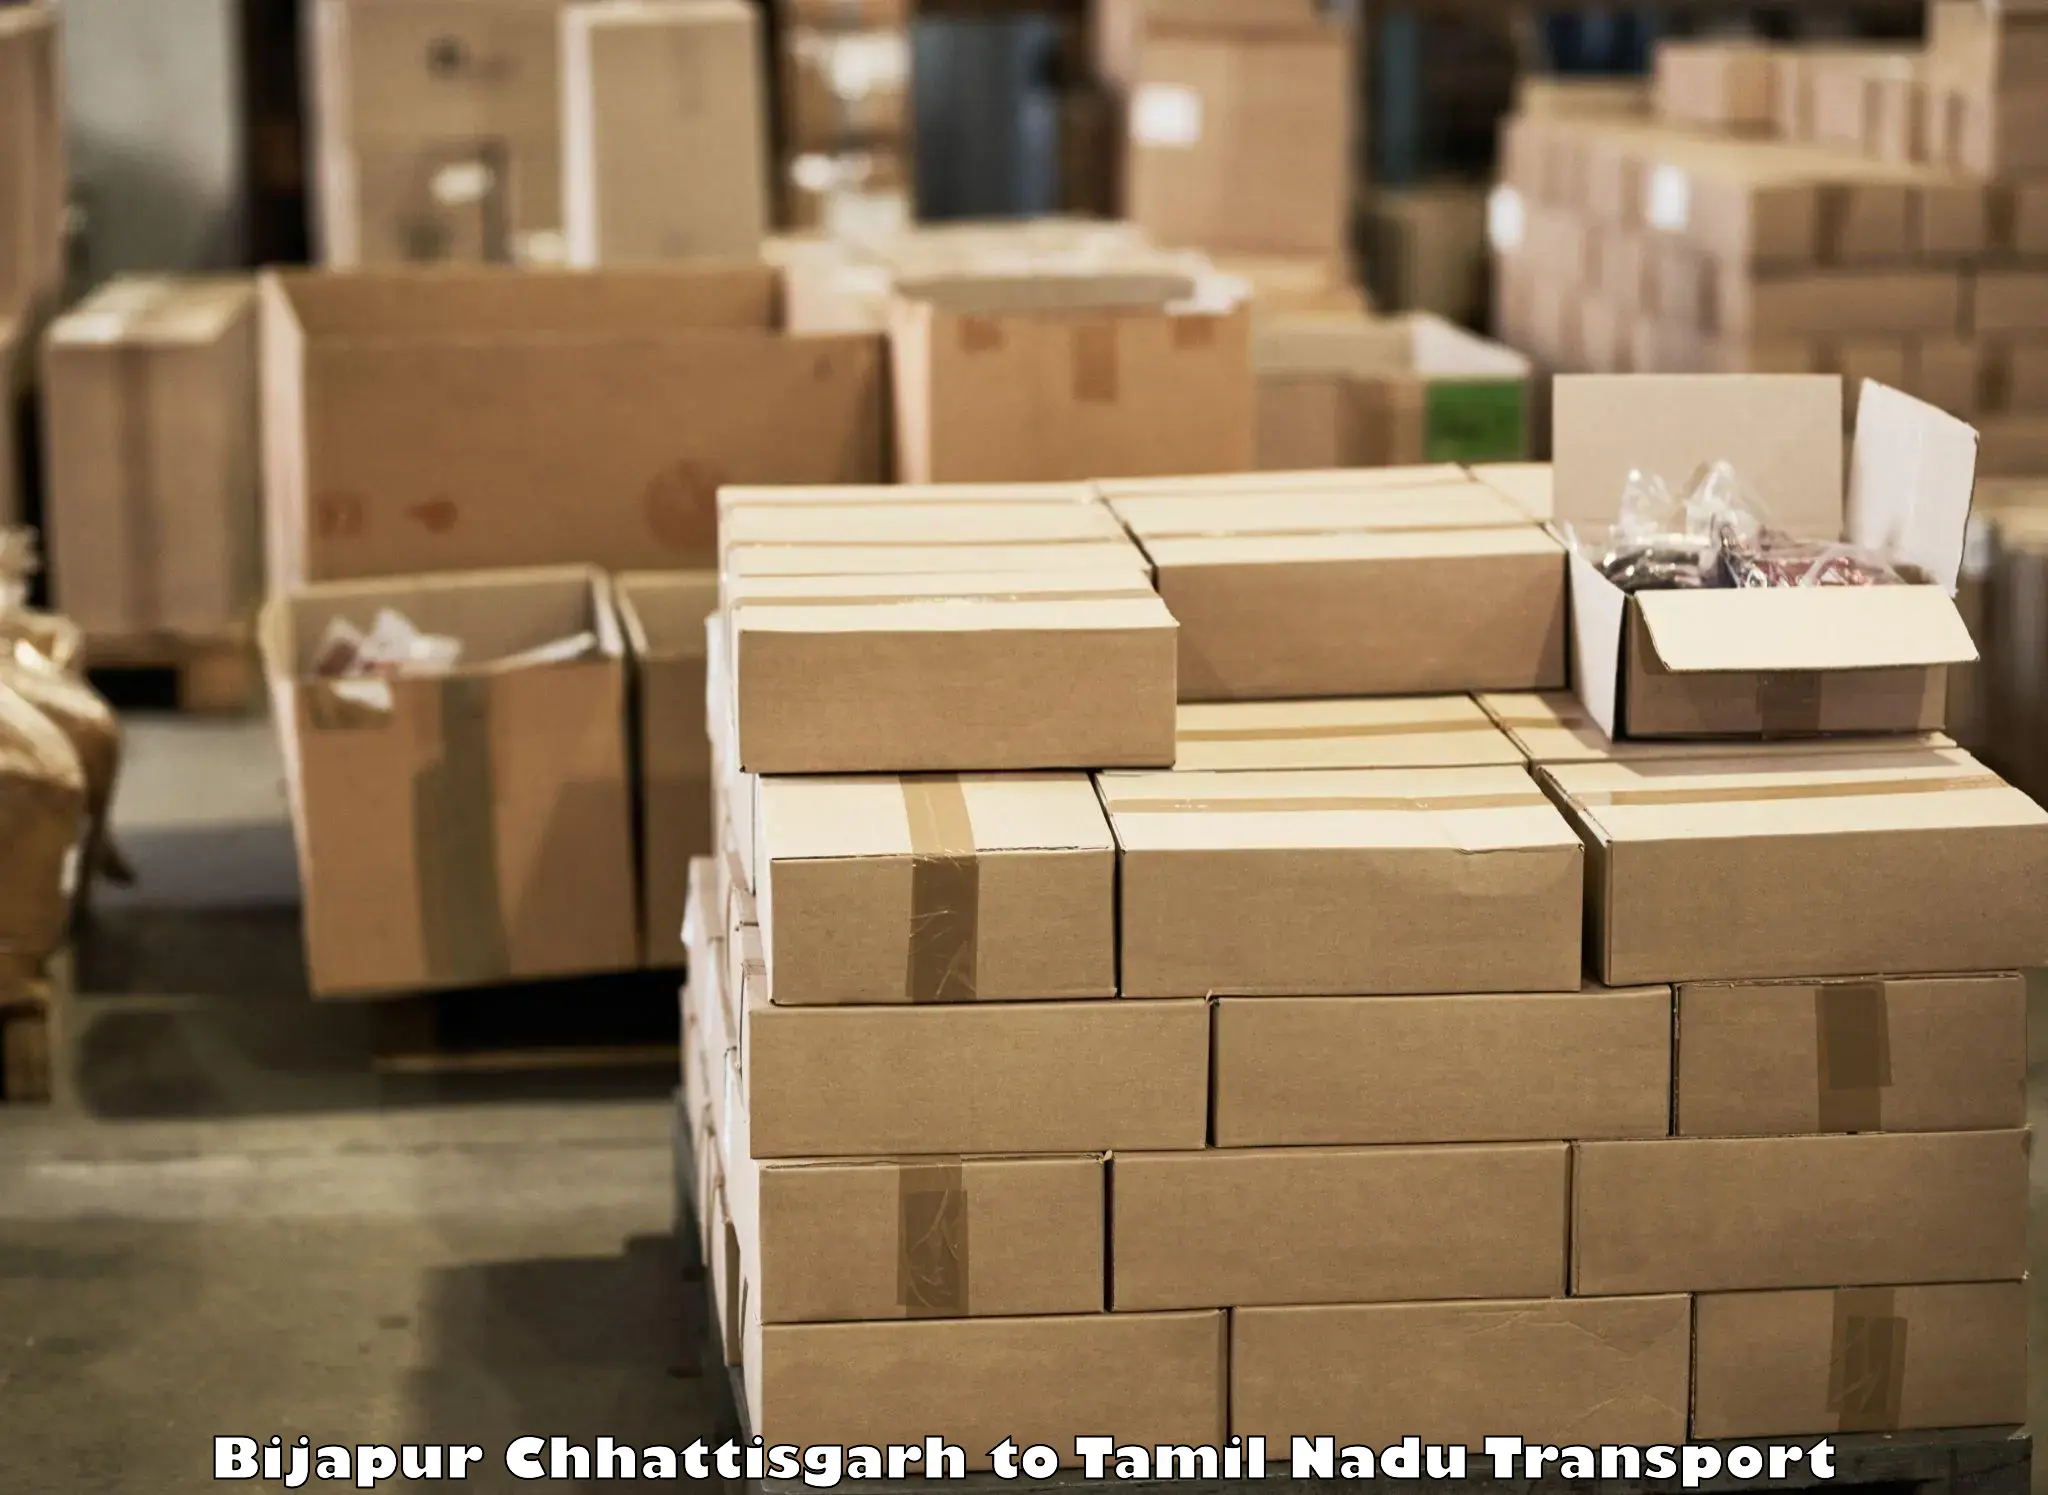 Cargo train transport services Bijapur Chhattisgarh to Kuttanur